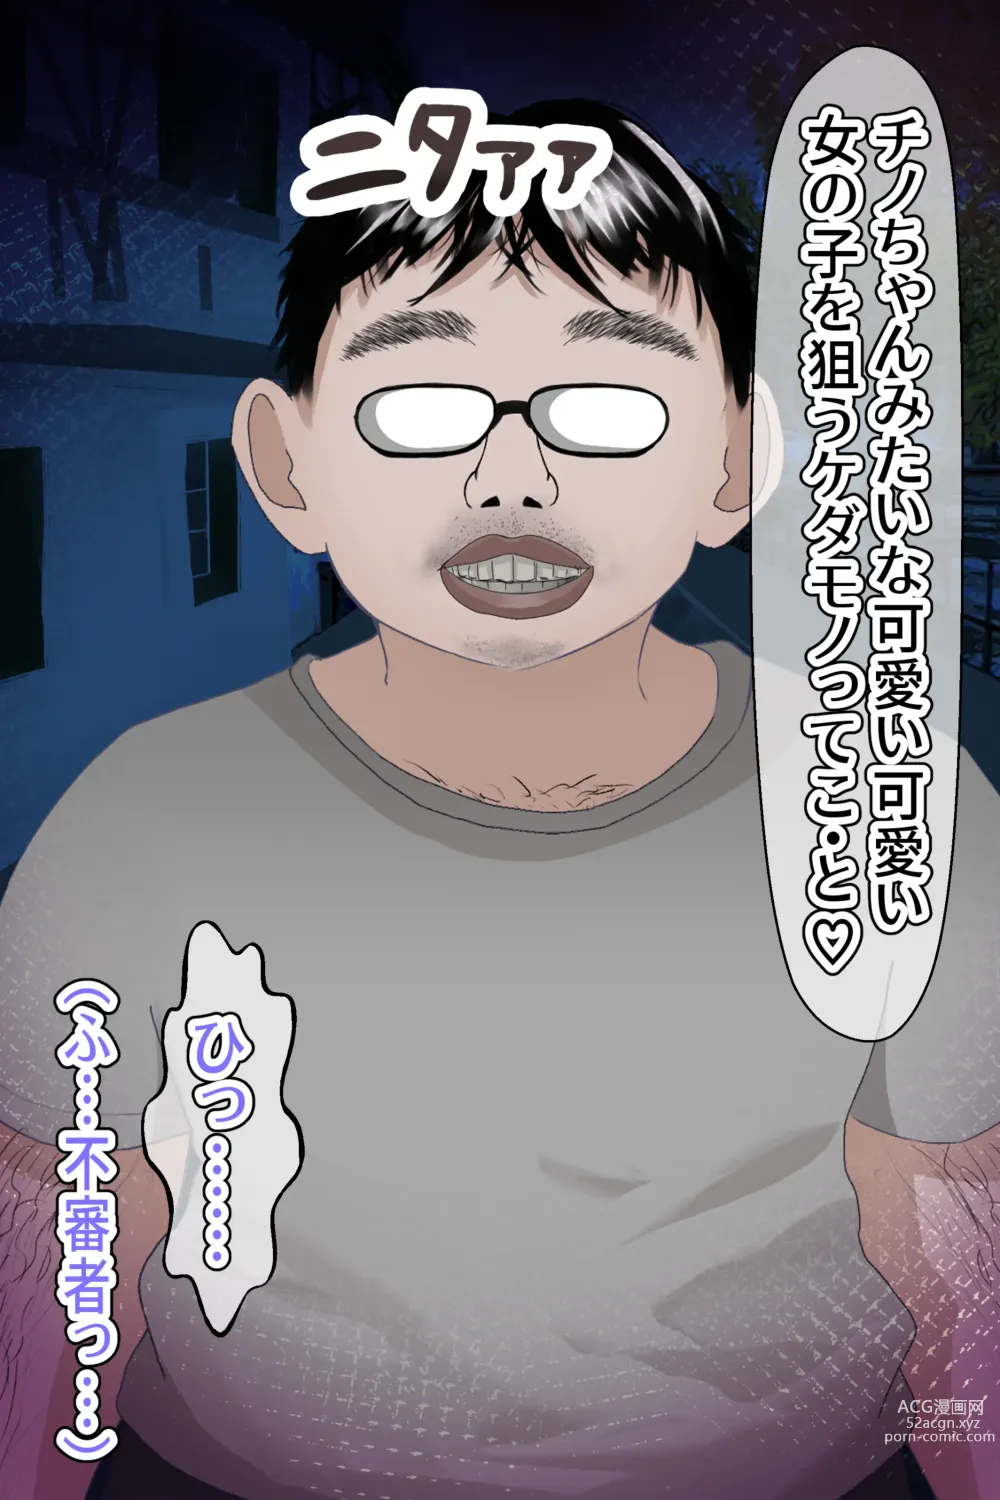 Page 6 of doujinshi Chino Kimo Otoko no Botebara Yousai Ochi CG-shuu